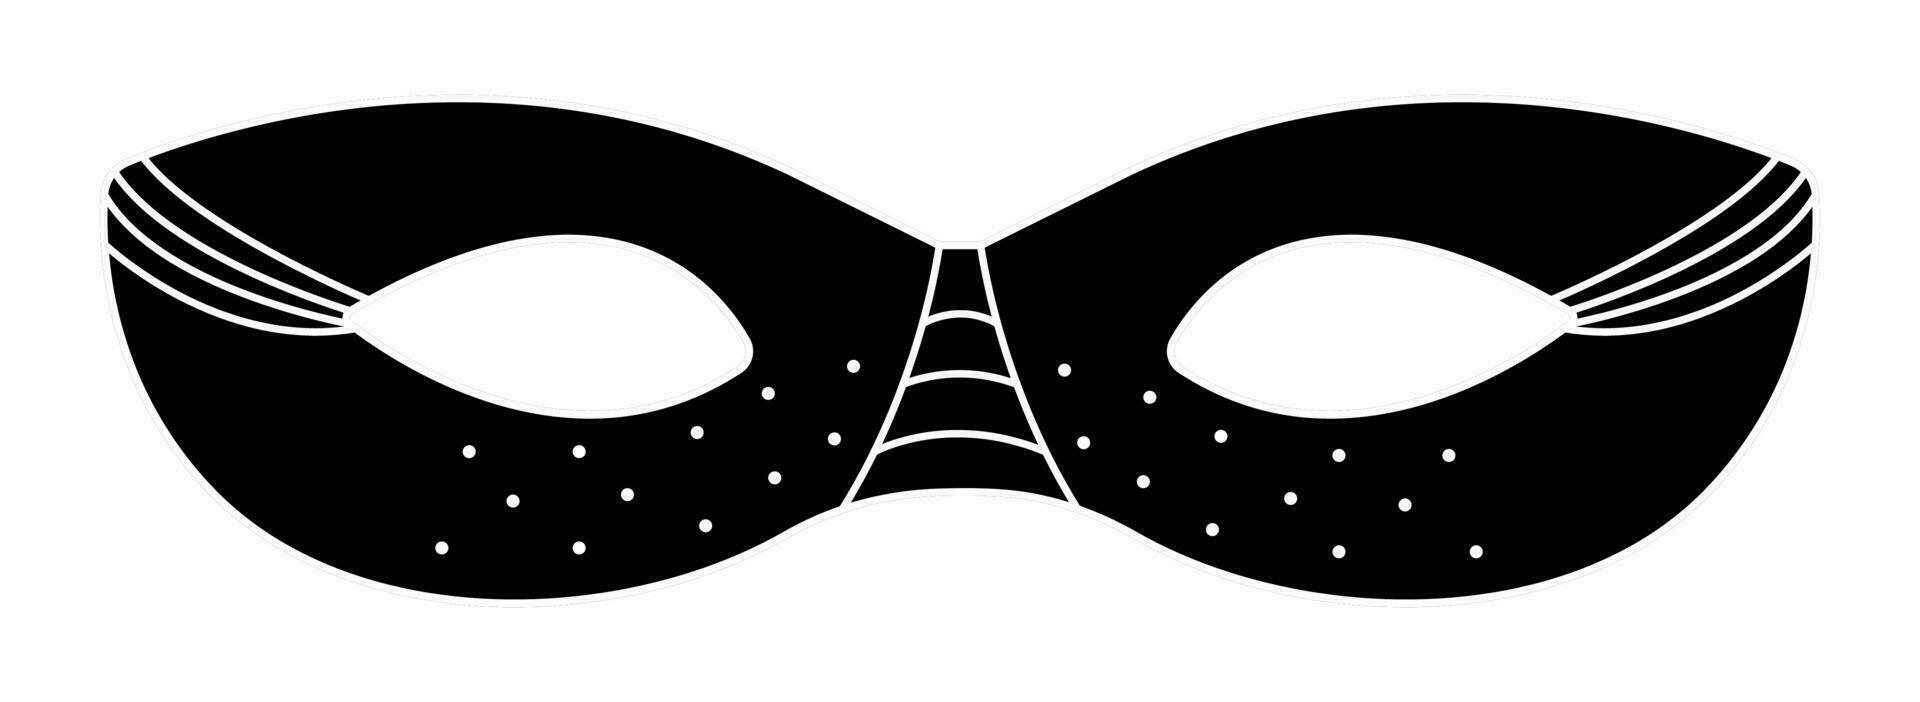 svart och vit maskerad mask med dotes och rader, vektor illustration för karneval och fest